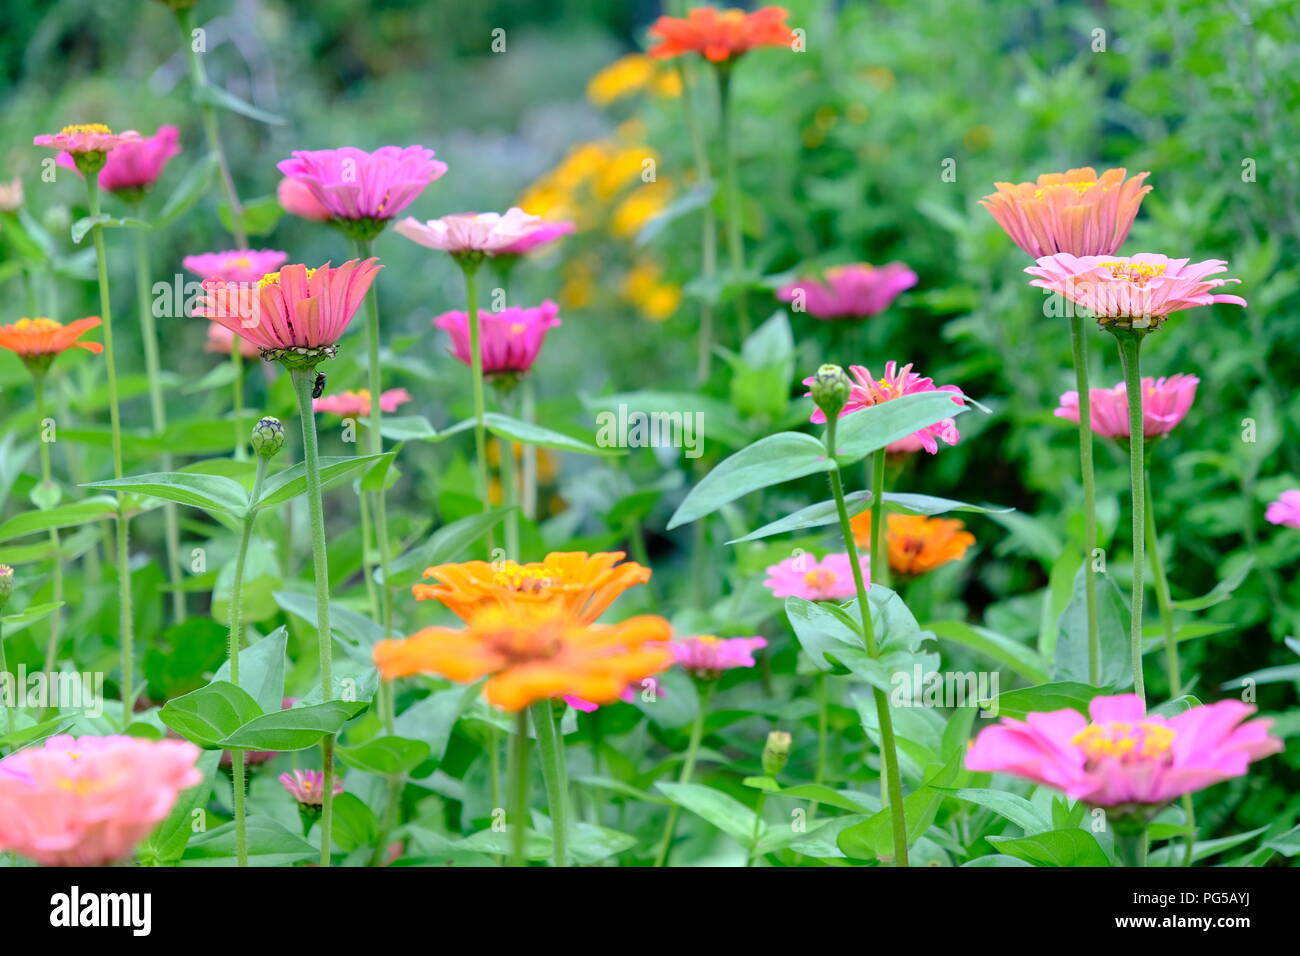 Ein bunter Blumen Szene. Rosa und Orange Blumen durch ein grünes Laub umgeben. Awesome abstrakte Landschaft Stockfoto